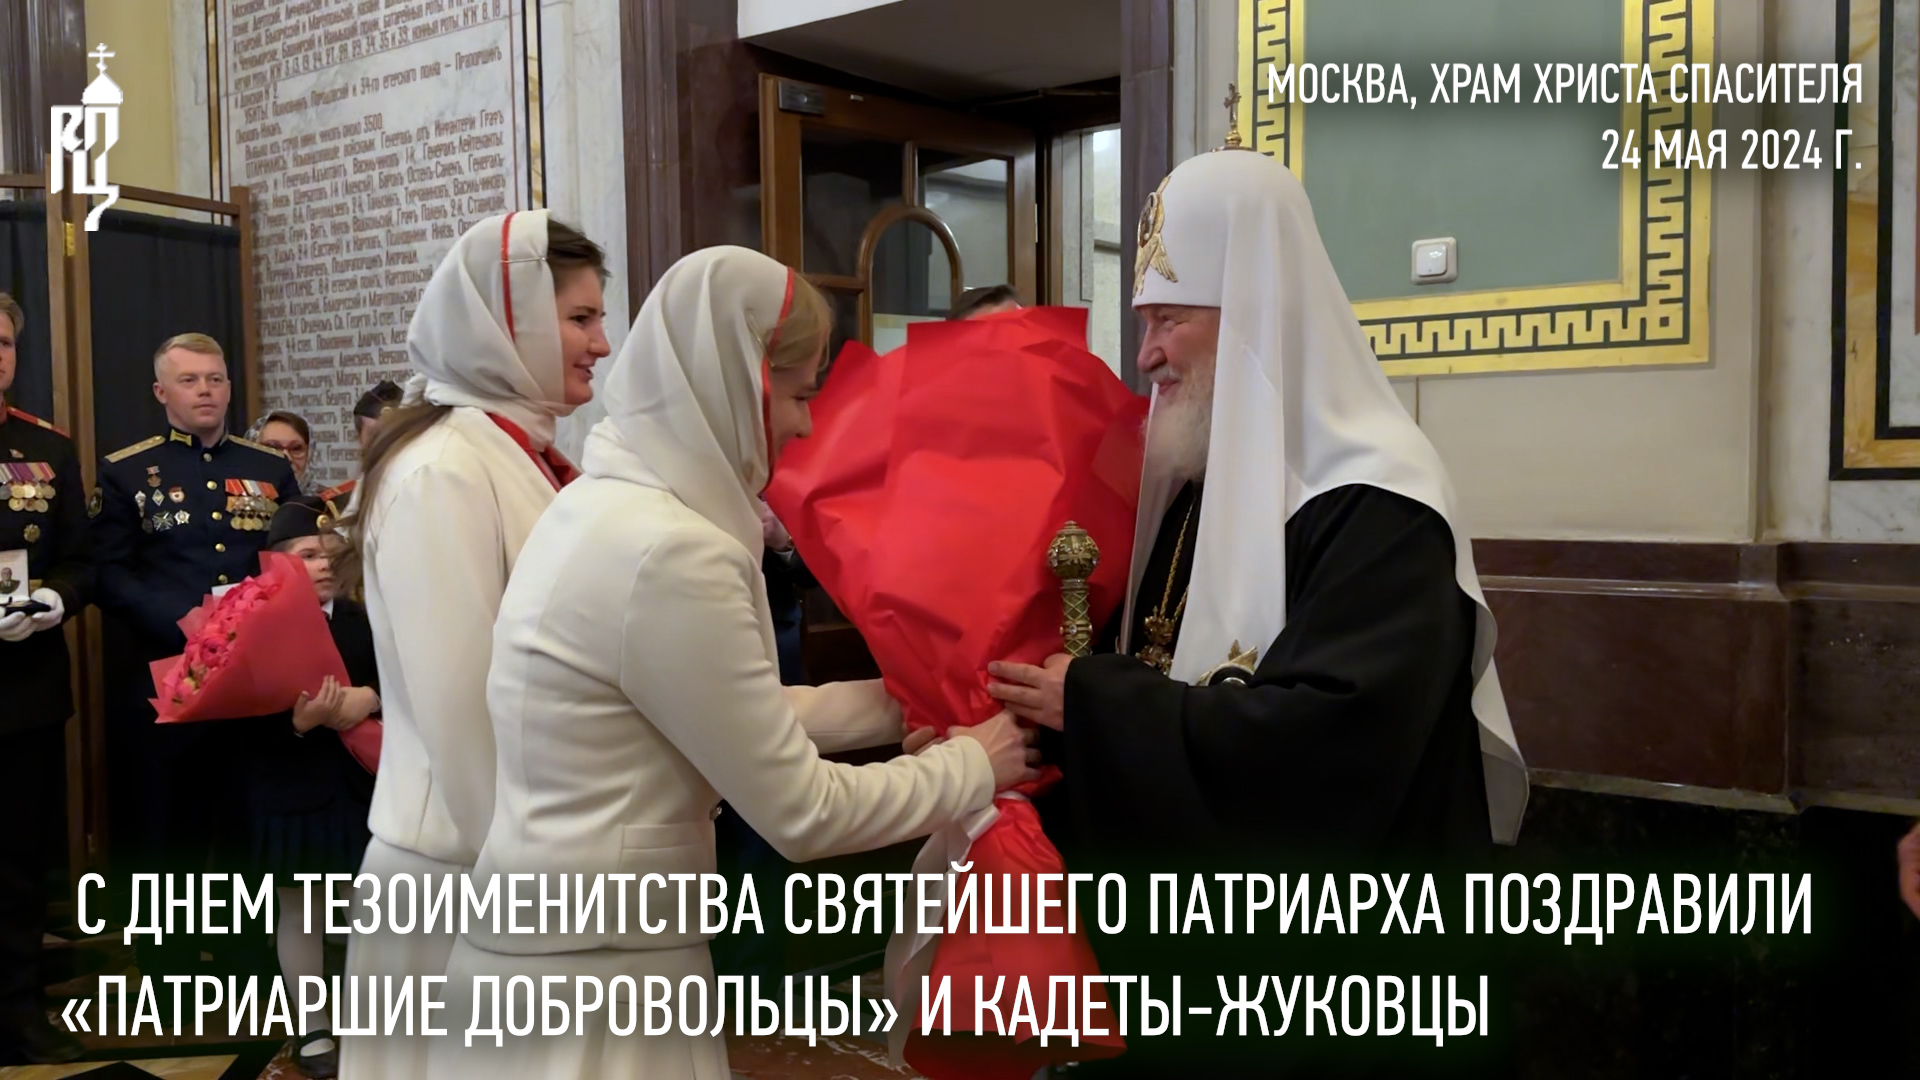 Святейшего Патриарха с днем тезоименитства поздравили «Патриаршие добровольцы» и кадеты-жуковцы